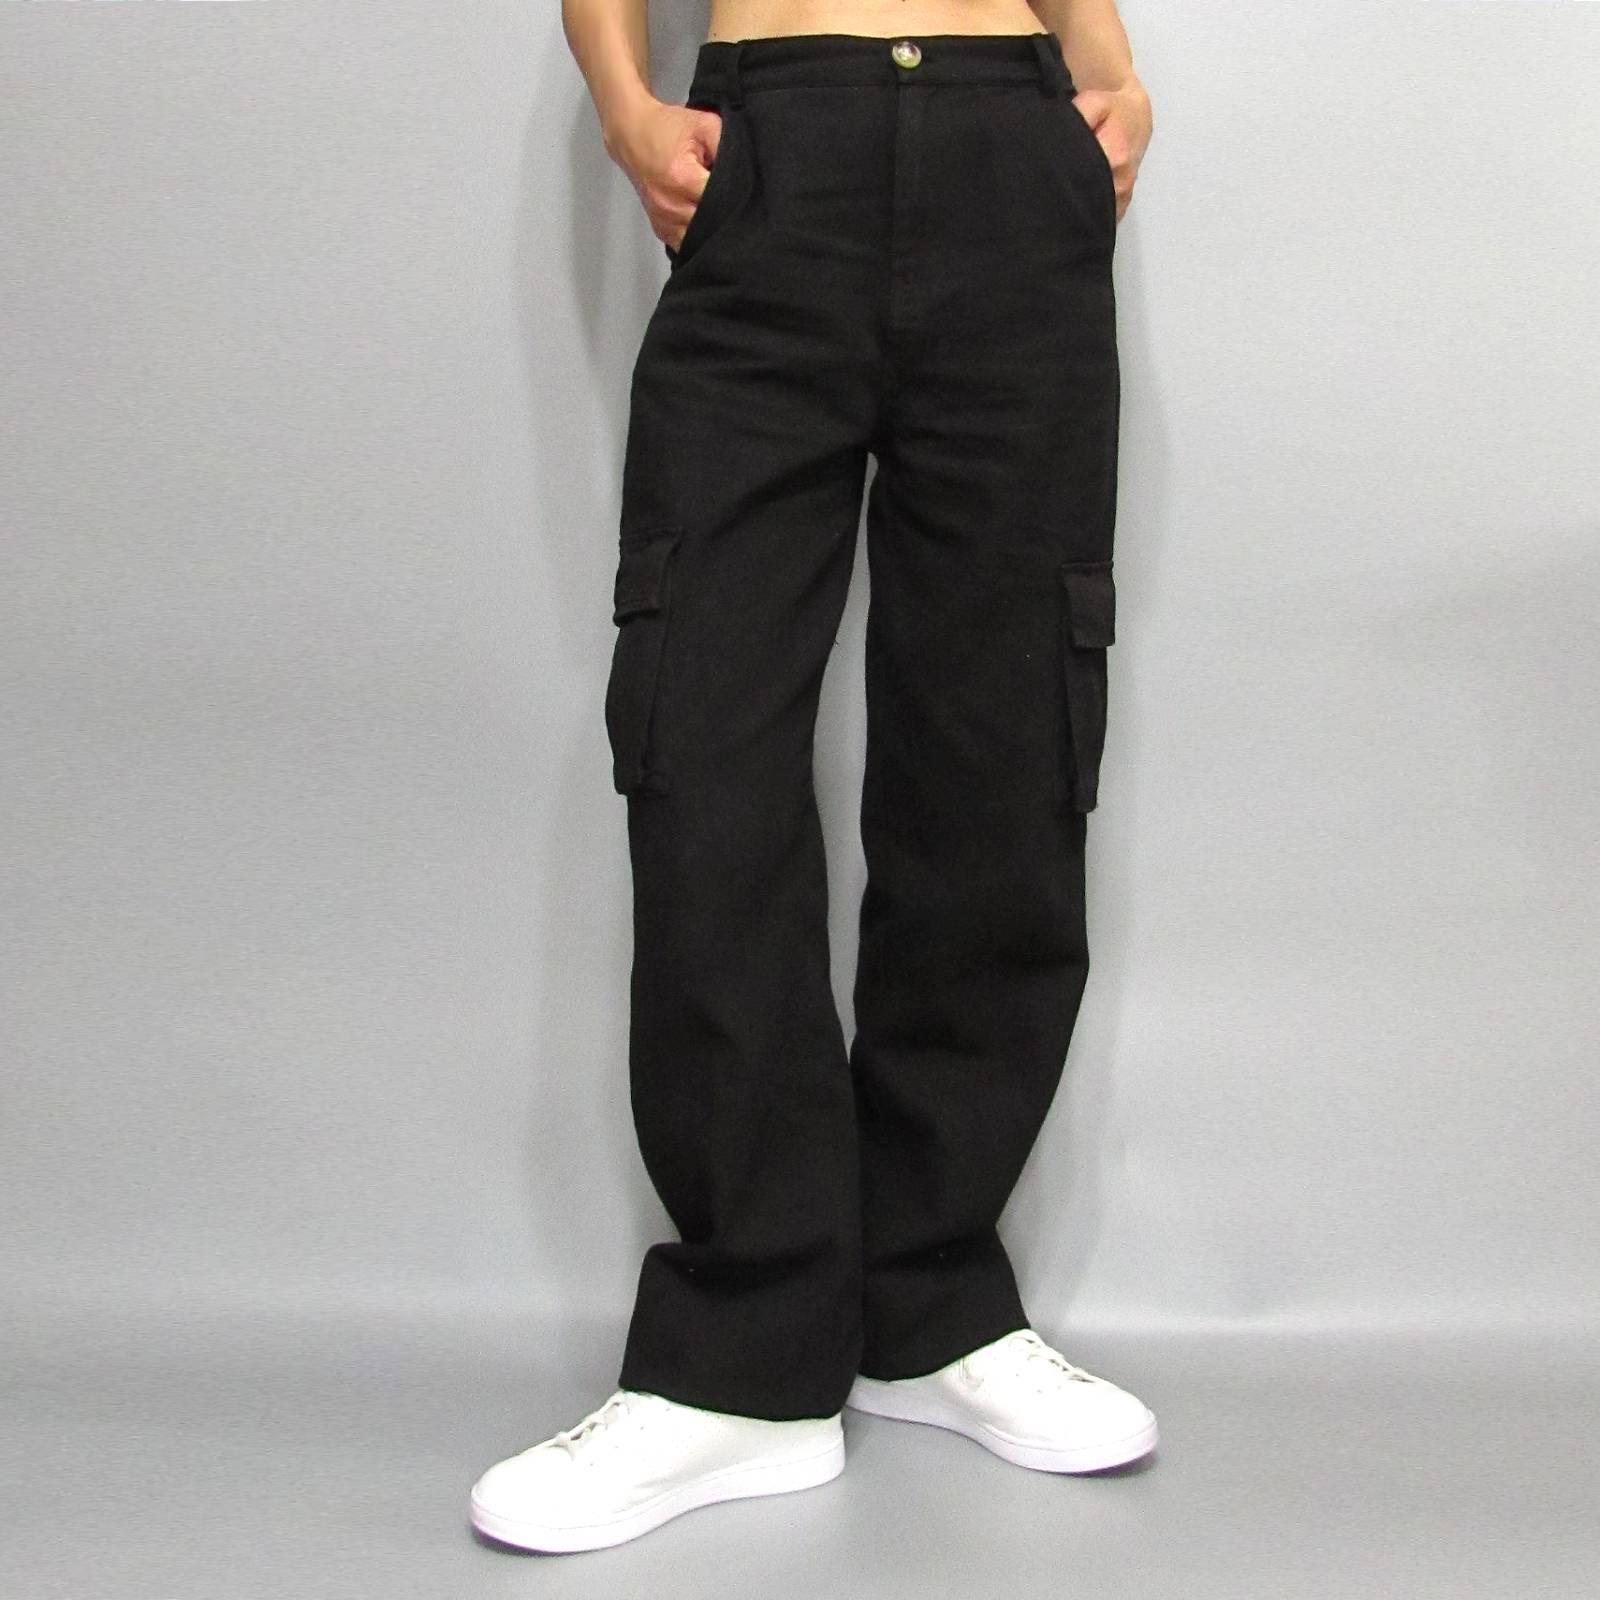 Pants276 Linen Blend High-Waist Cargo Pants/Black